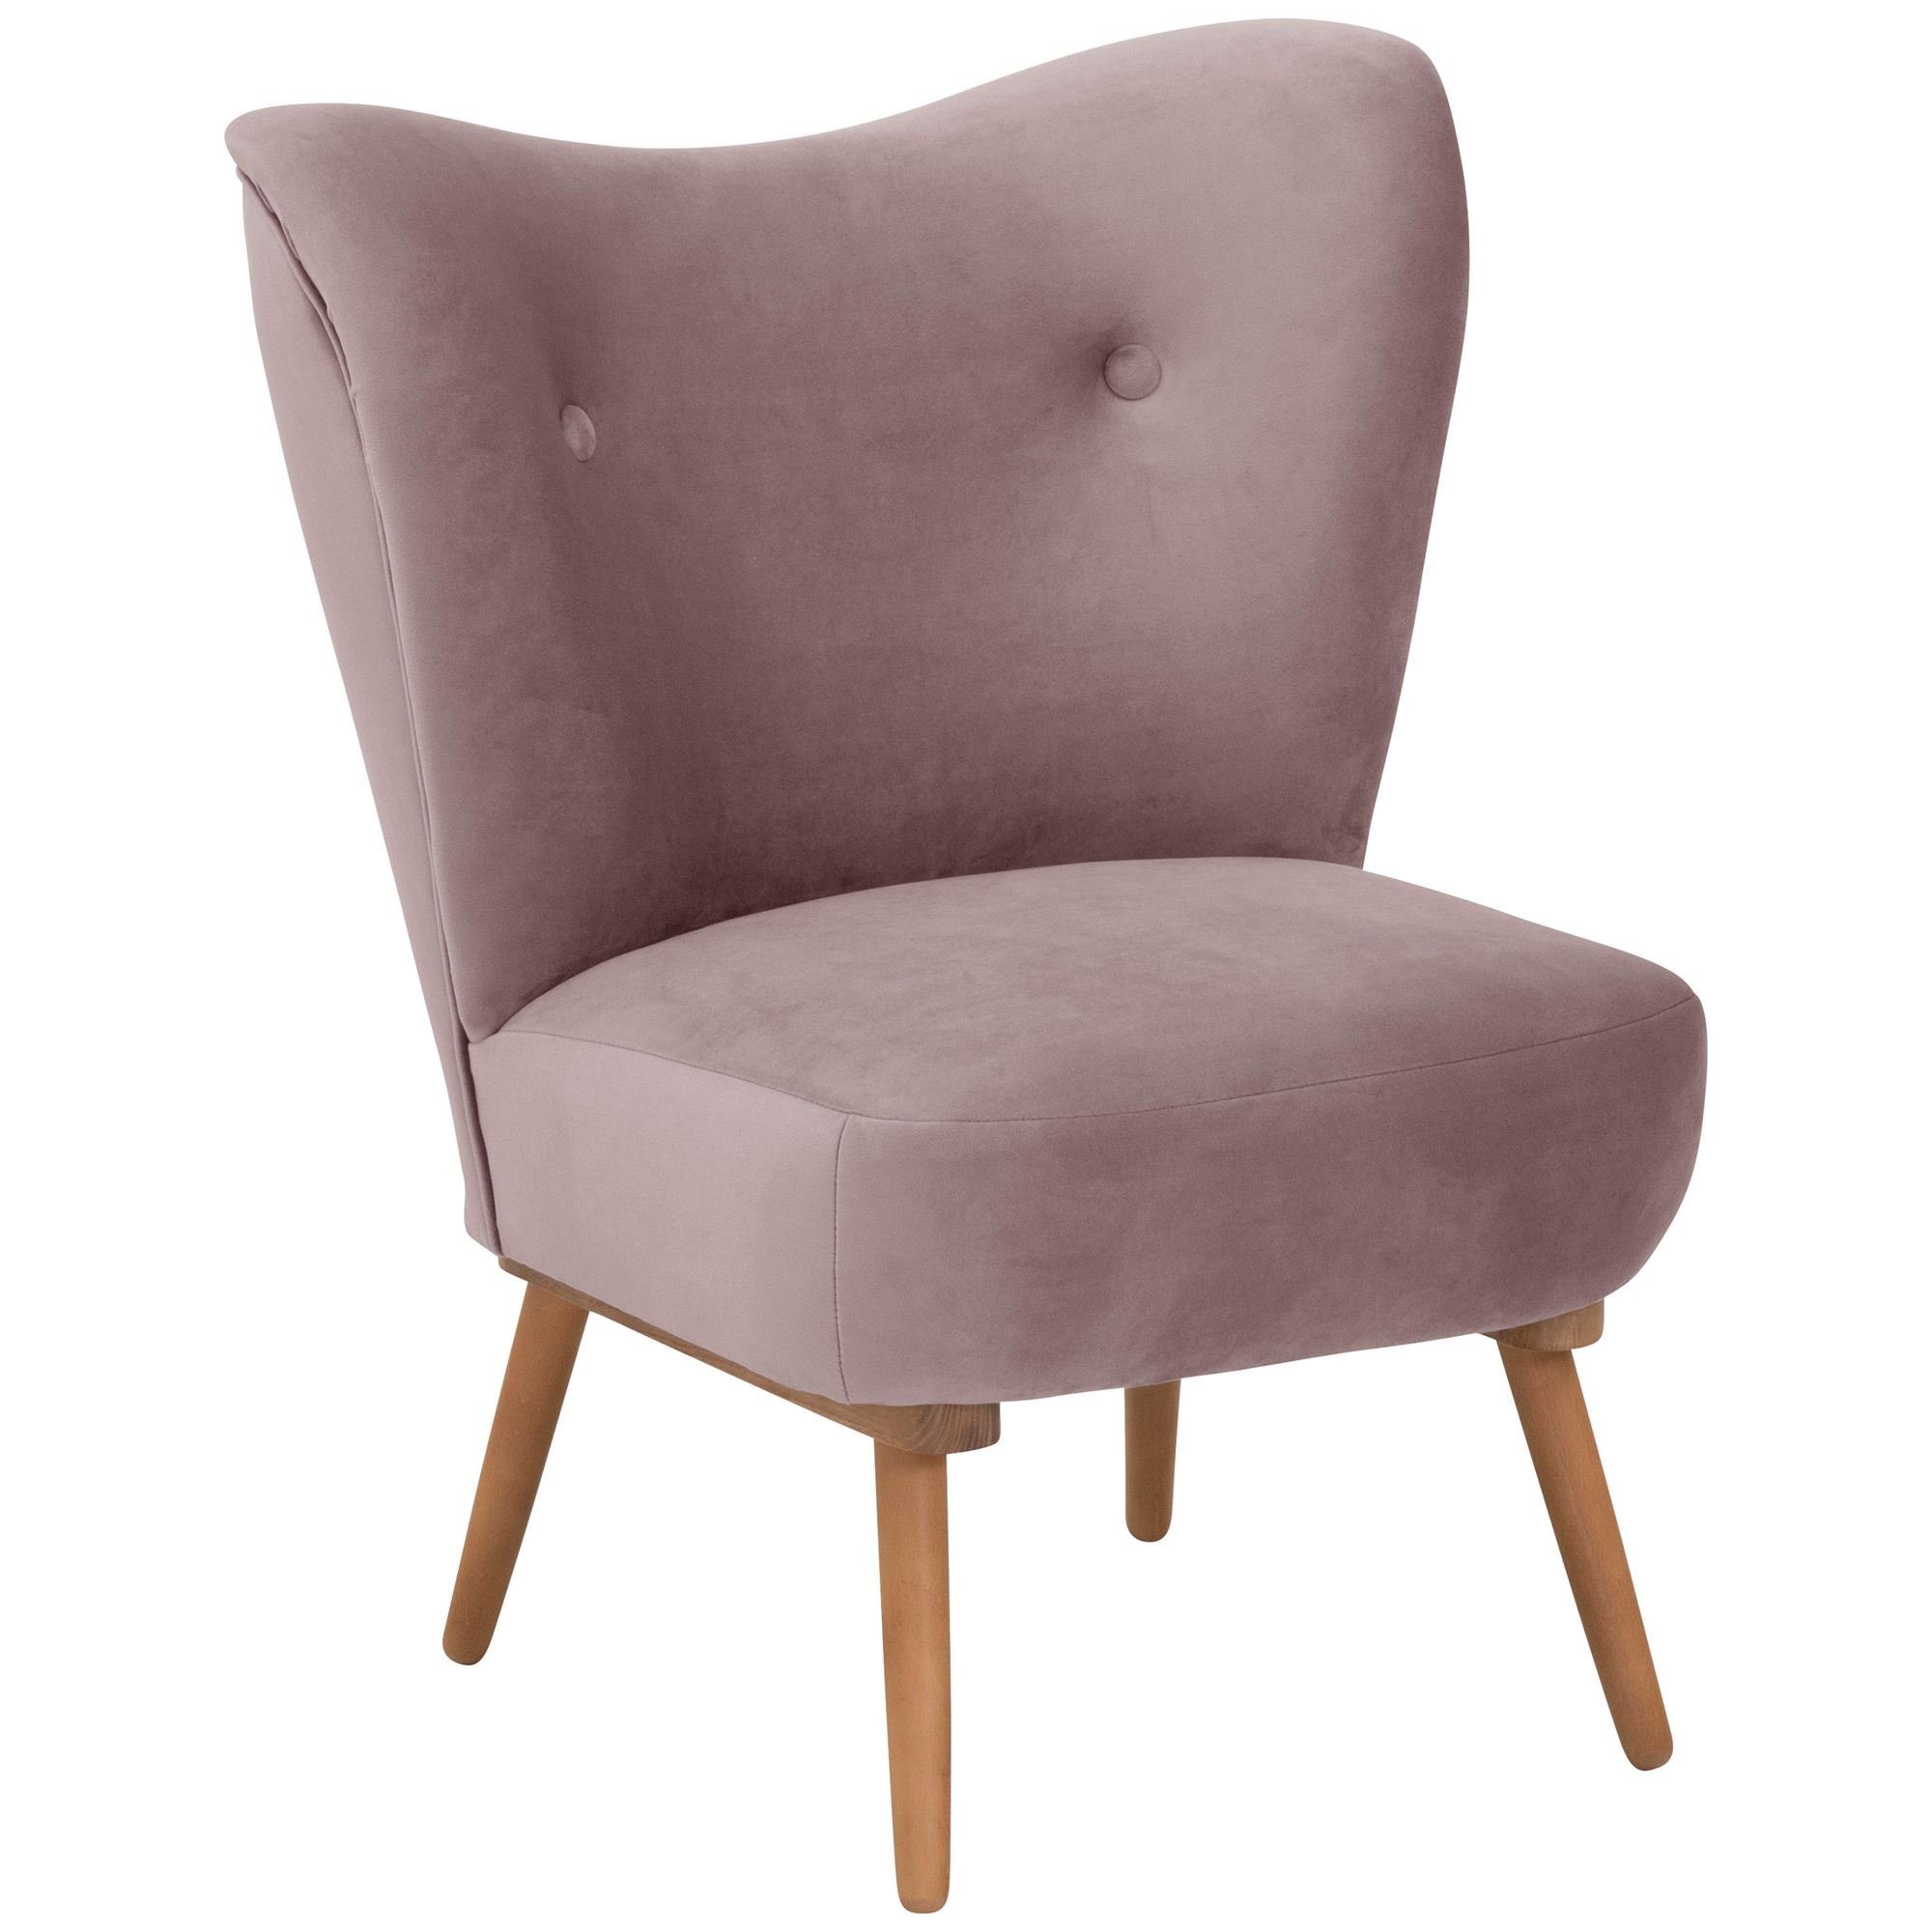 Versand, hochwertig Sessel Buche 23186 aufm Kostenlosem / 1-St), lackiert Bezug Sessel verarbeitet,bequemer Kaila Sitz inkl. rosé Samtvelours (Sparpreis erlefarbig 58 Kessel